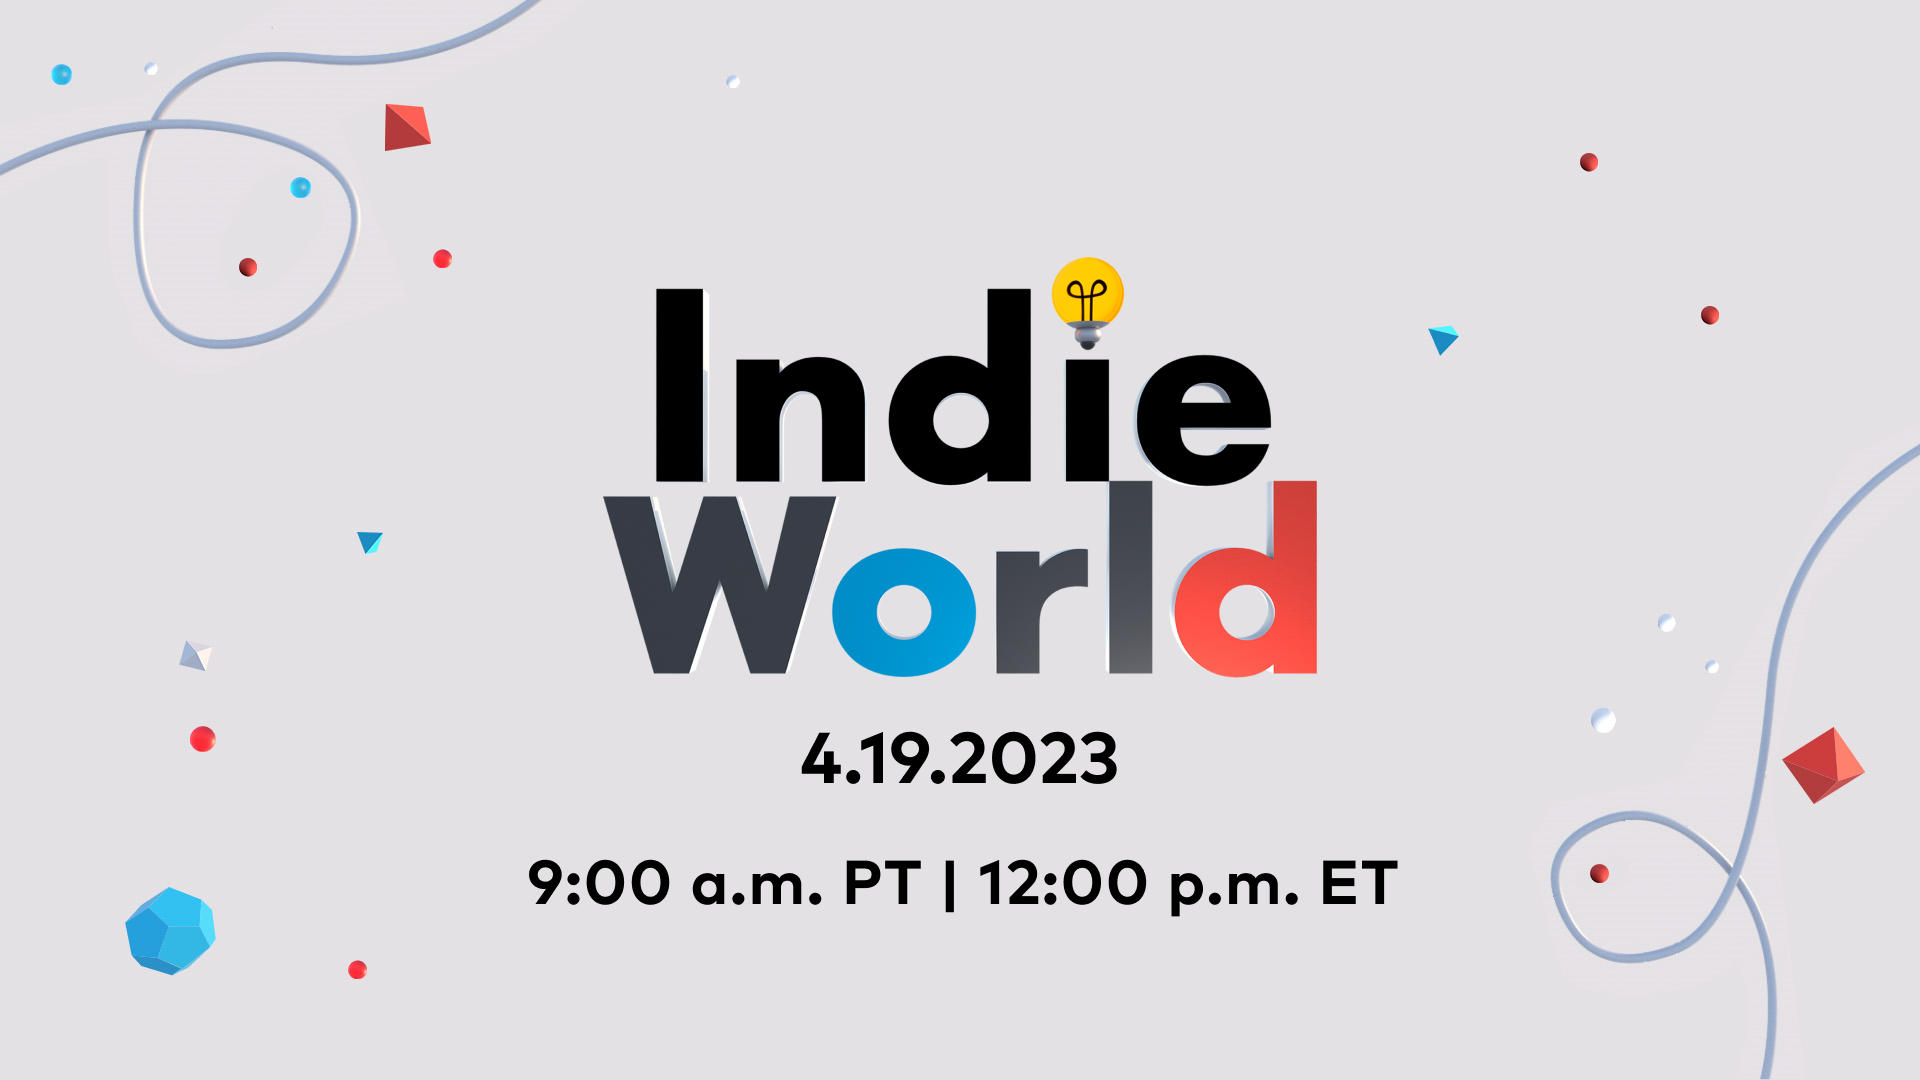 Nintendo Indie World Showcase 2023